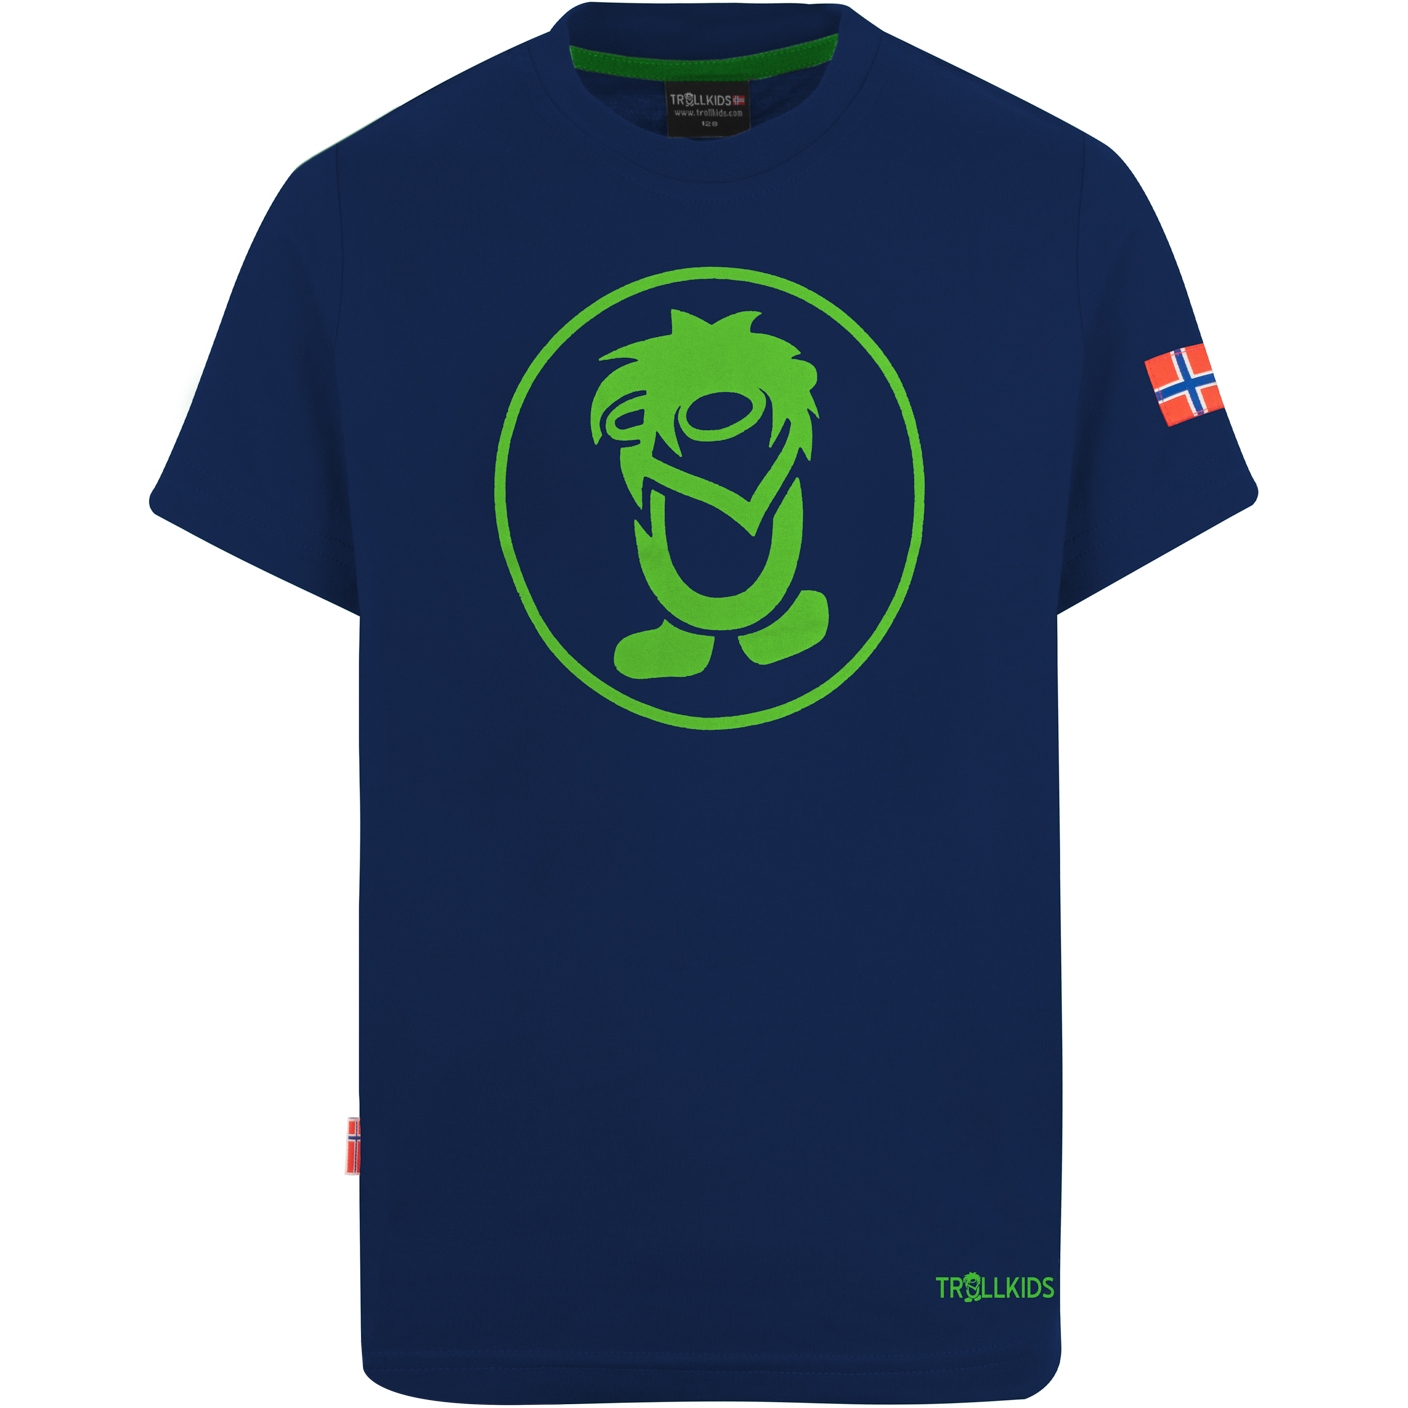 Produktbild von Trollkids Troll T-Shirt Kinder - navy/green